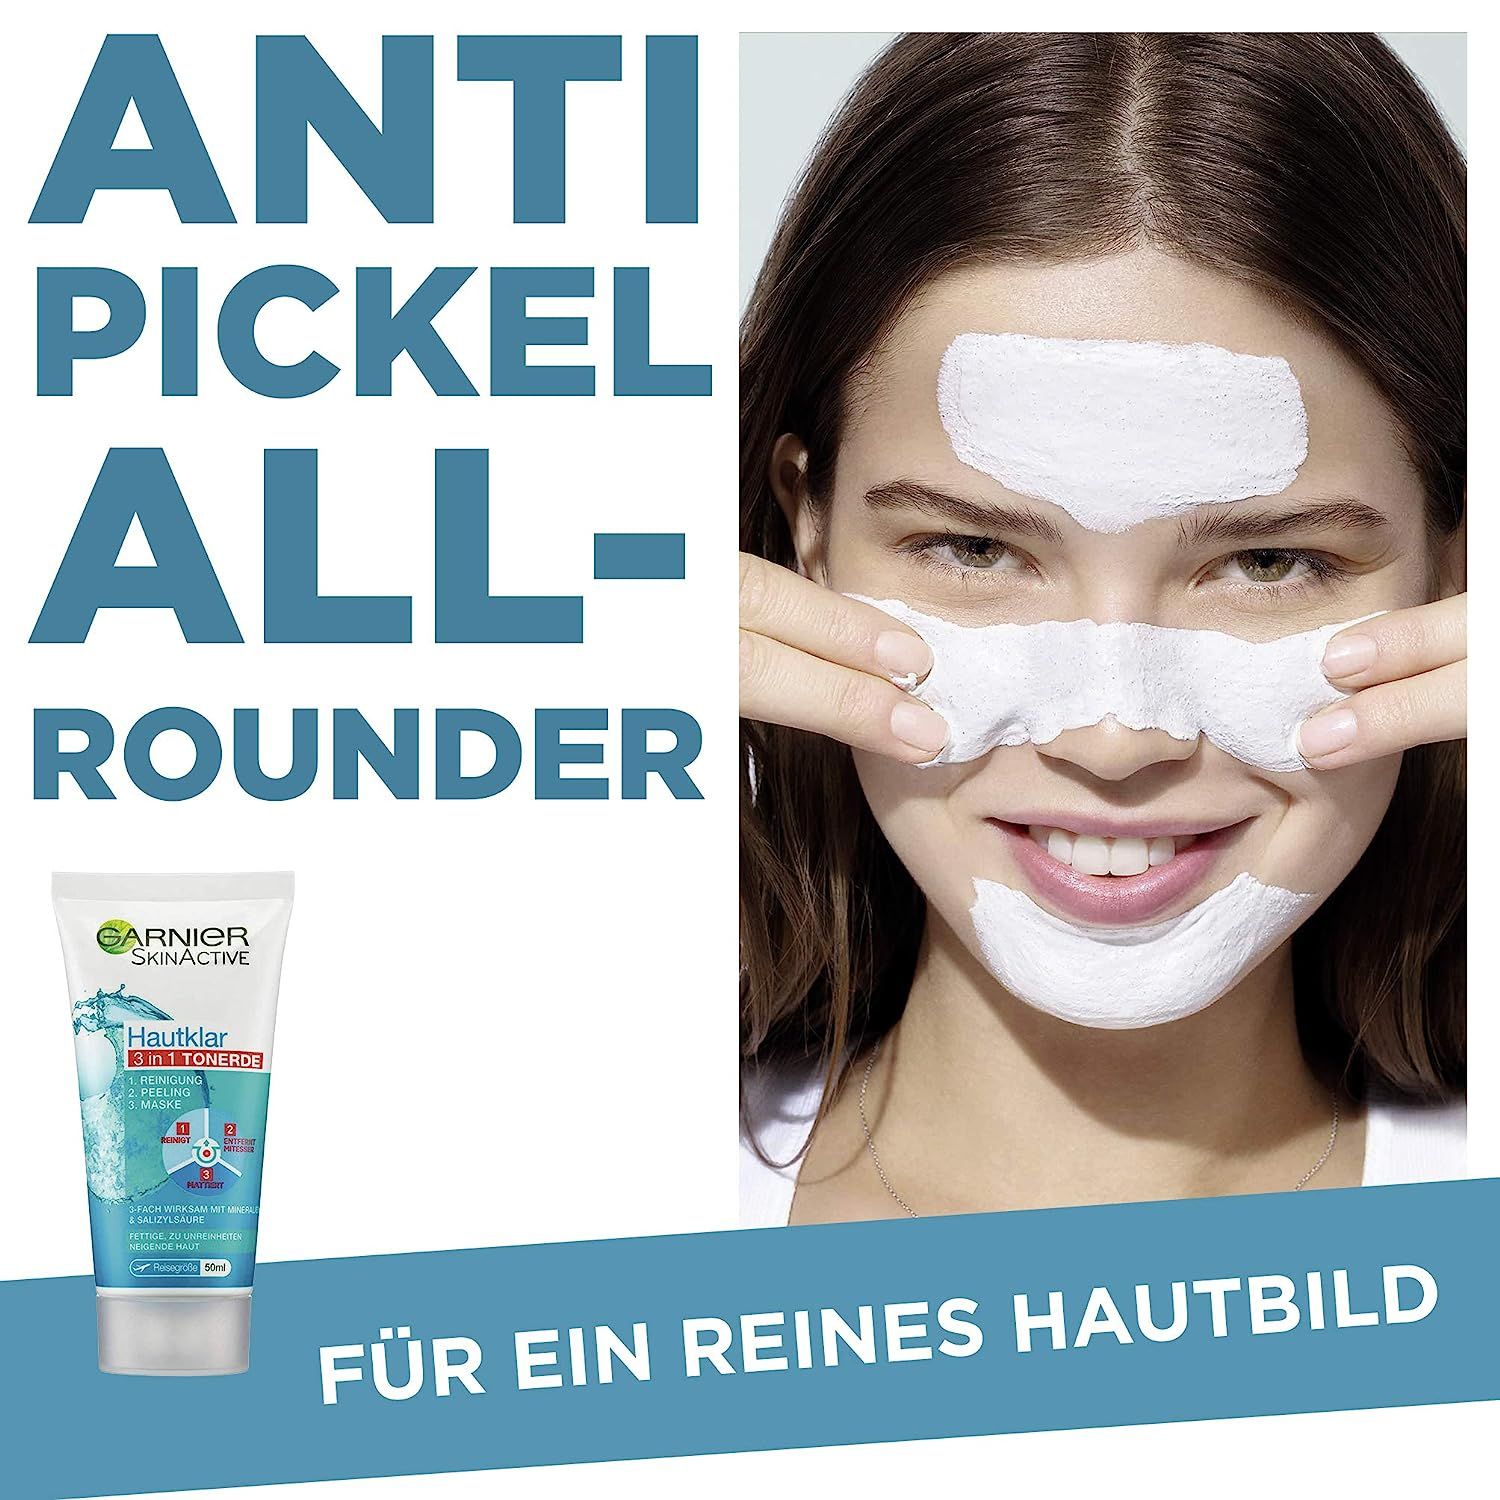 Garnier Hautklar 3 in 1 Gesichtsreinigung für unreine Haut, Reinigung, Peeling und Maske